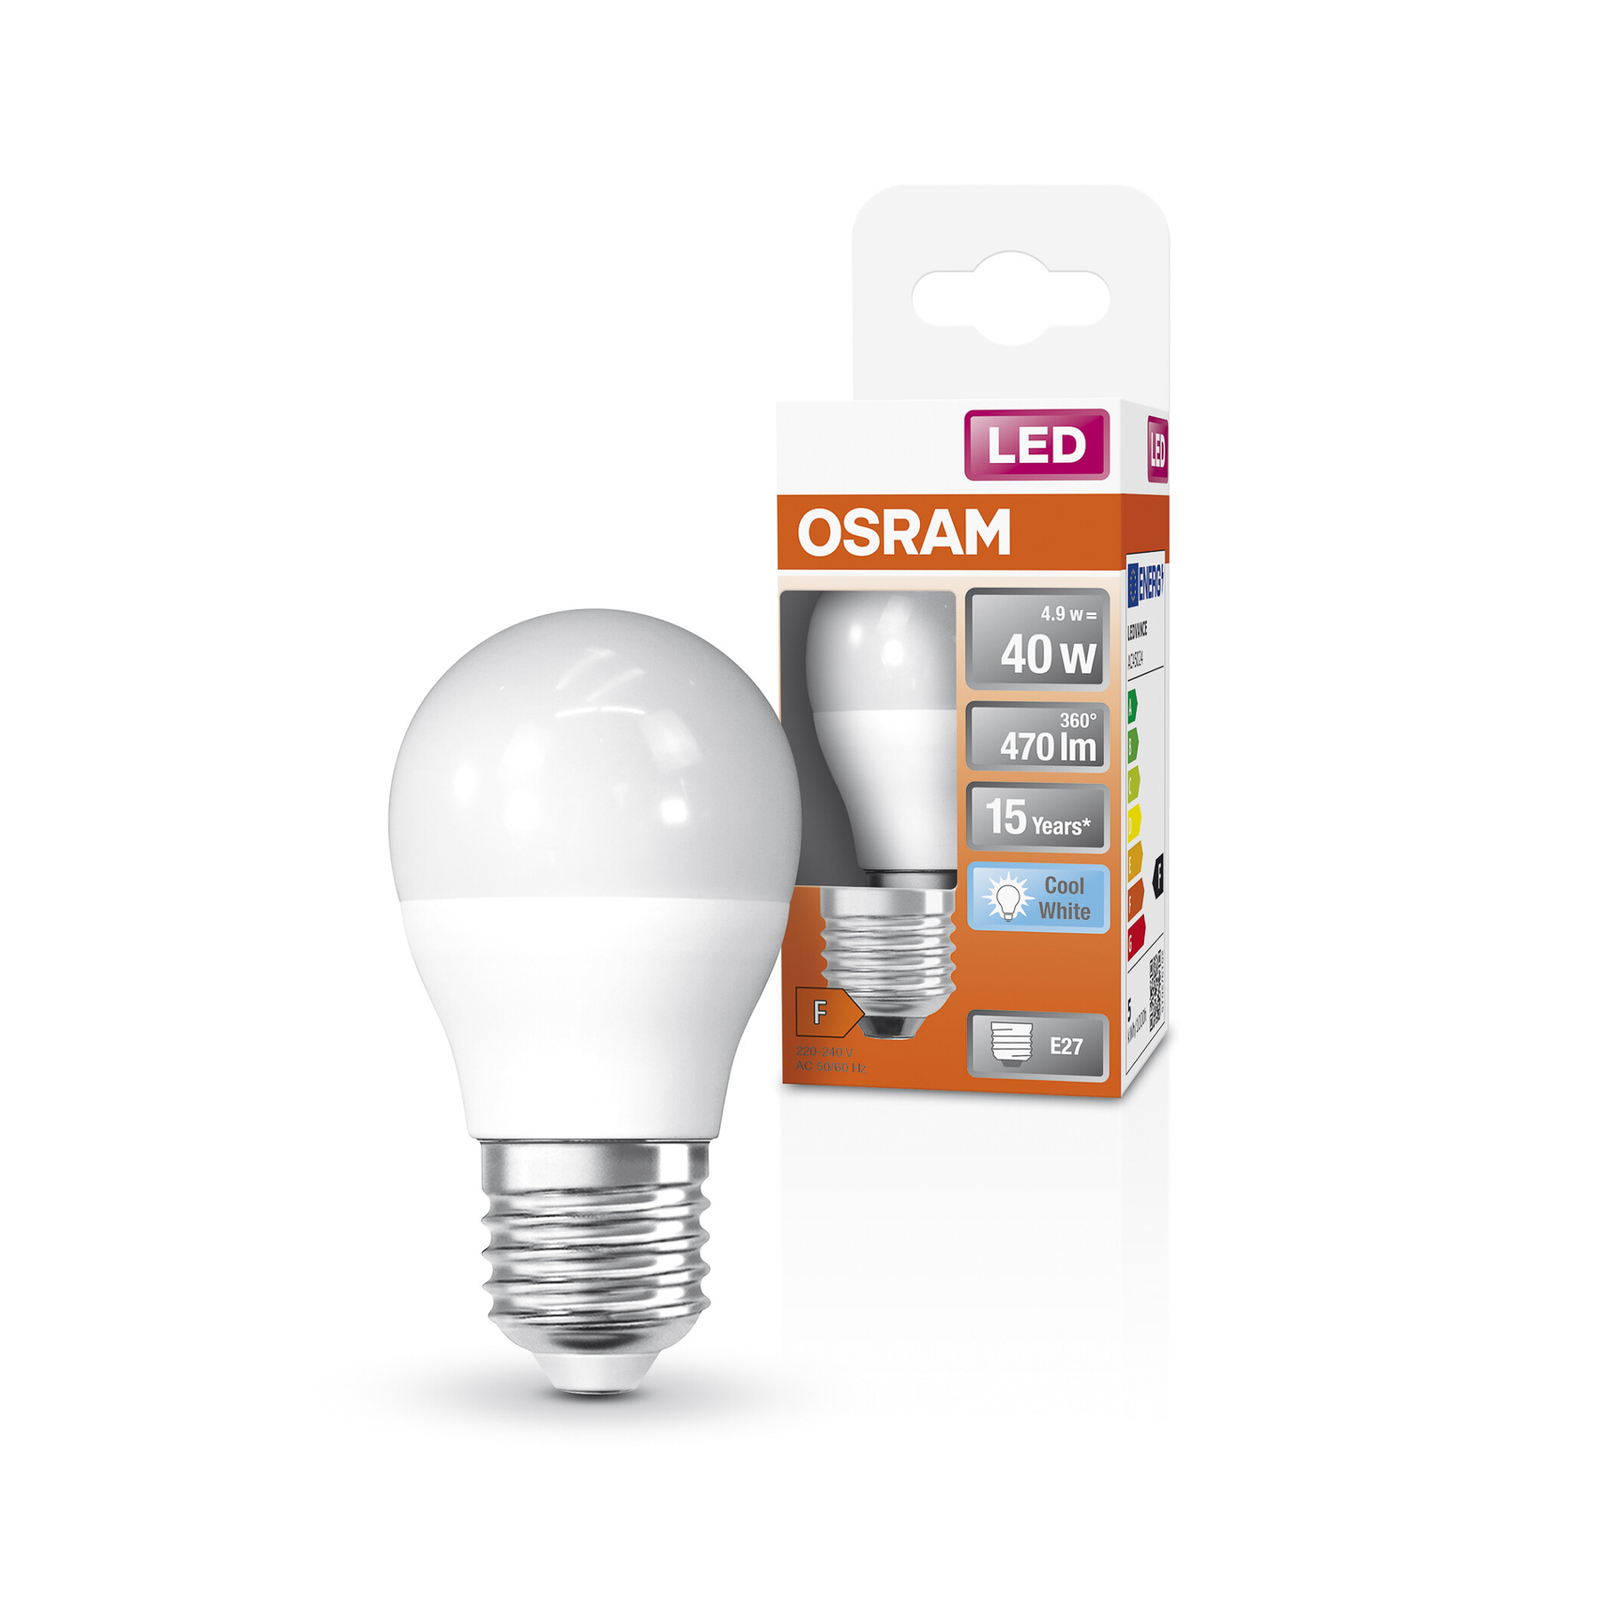 OSRAM Star LED bulb E27 4.9 W 470 lm 4,000 K matt